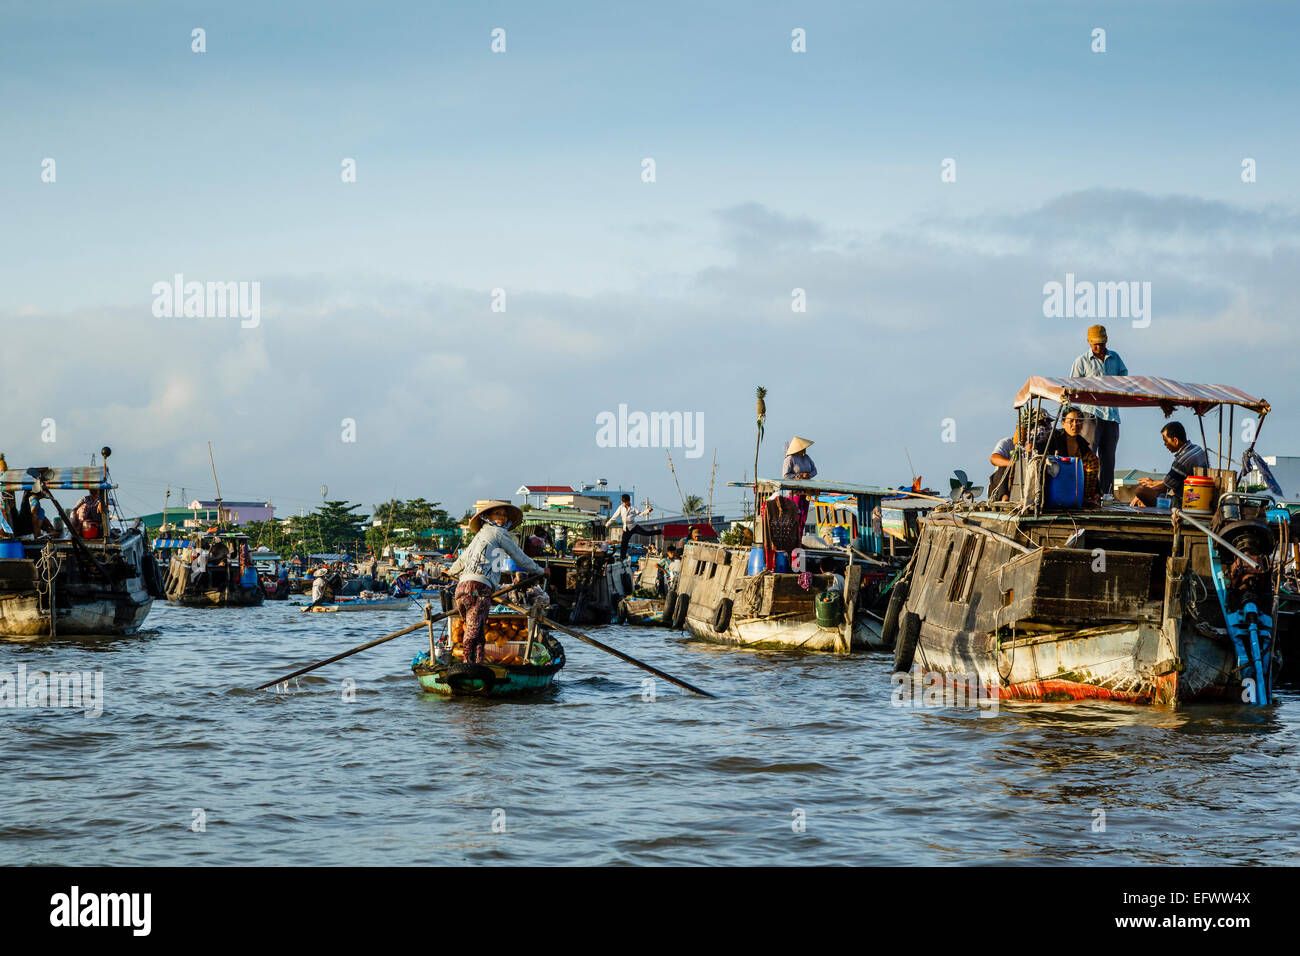 Marché flottant de Cai Rang au Delta du Mékong, Can Tho, Vietnam Banque D'Images